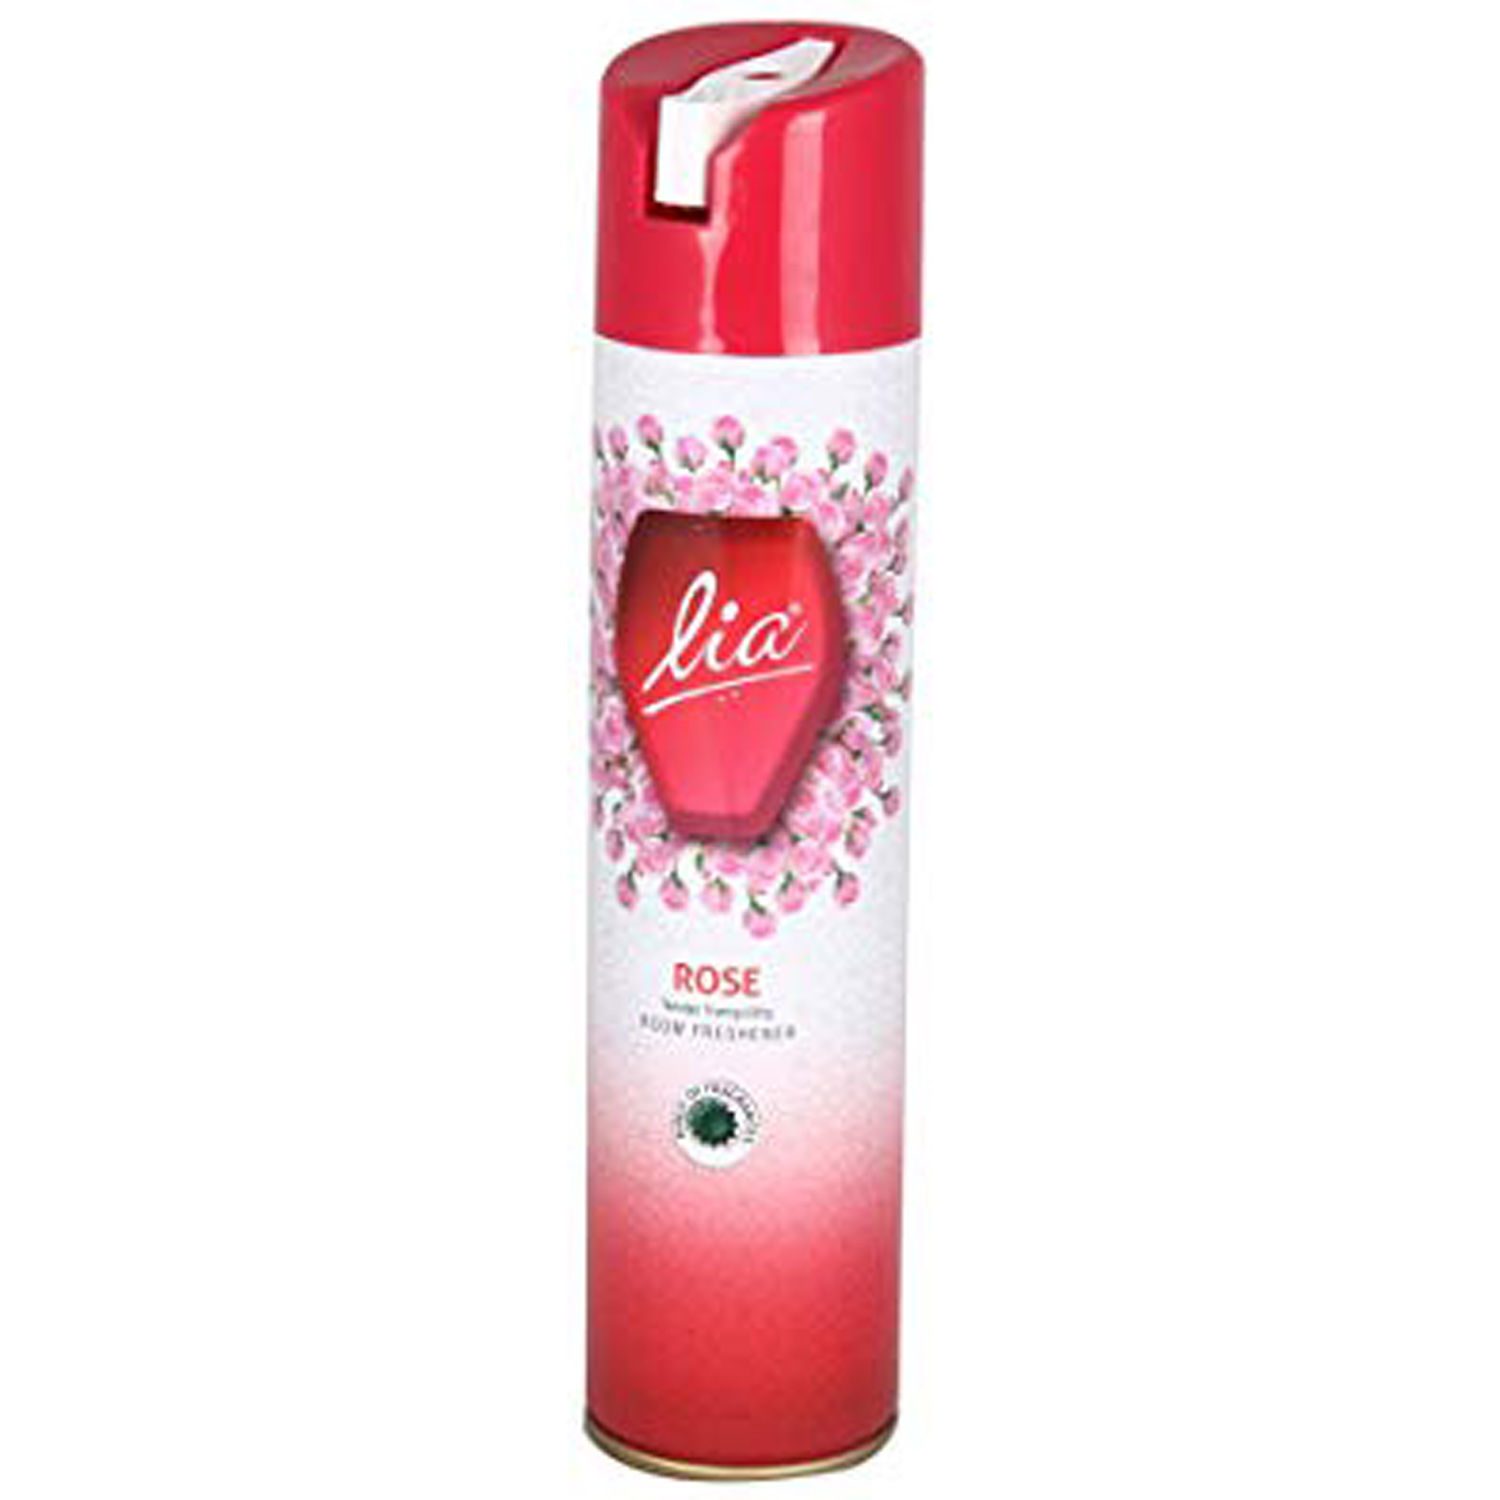 Buy Lia Rose Room Freshener, 140 gm Online